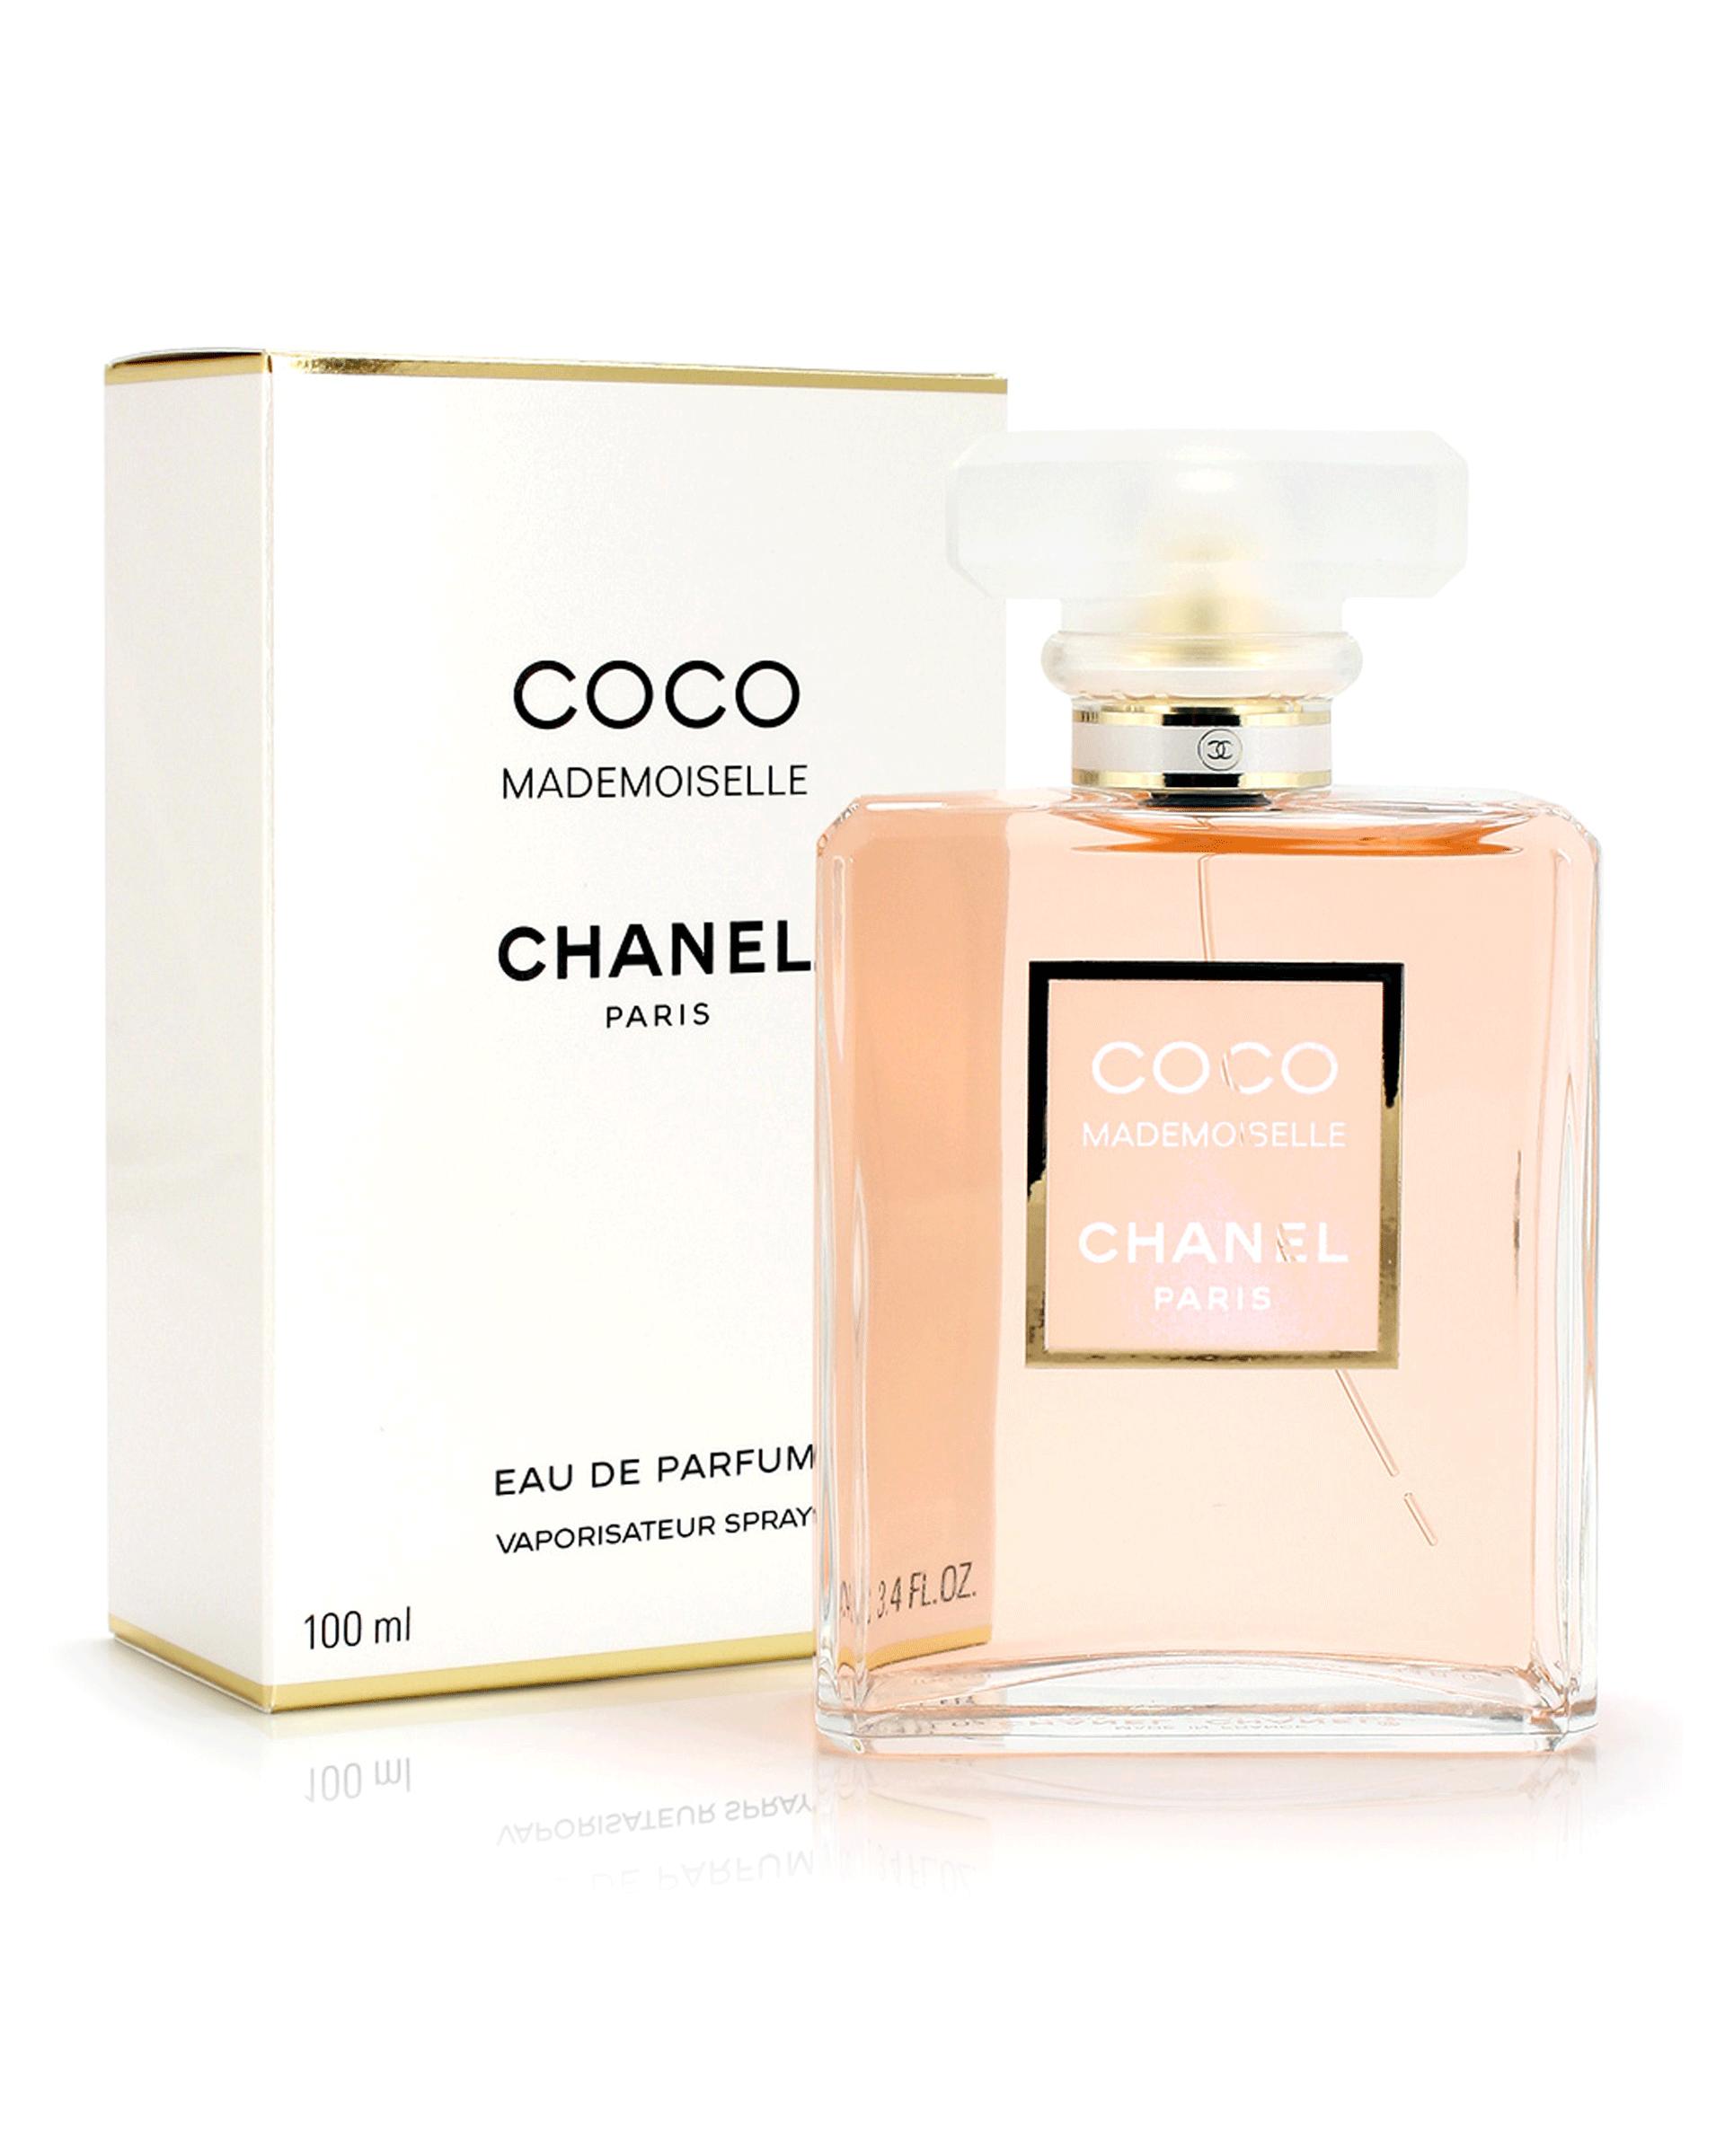 عطر زنانه کوکو مادموازل از برند شنل Chanel Coco Mademoiselle